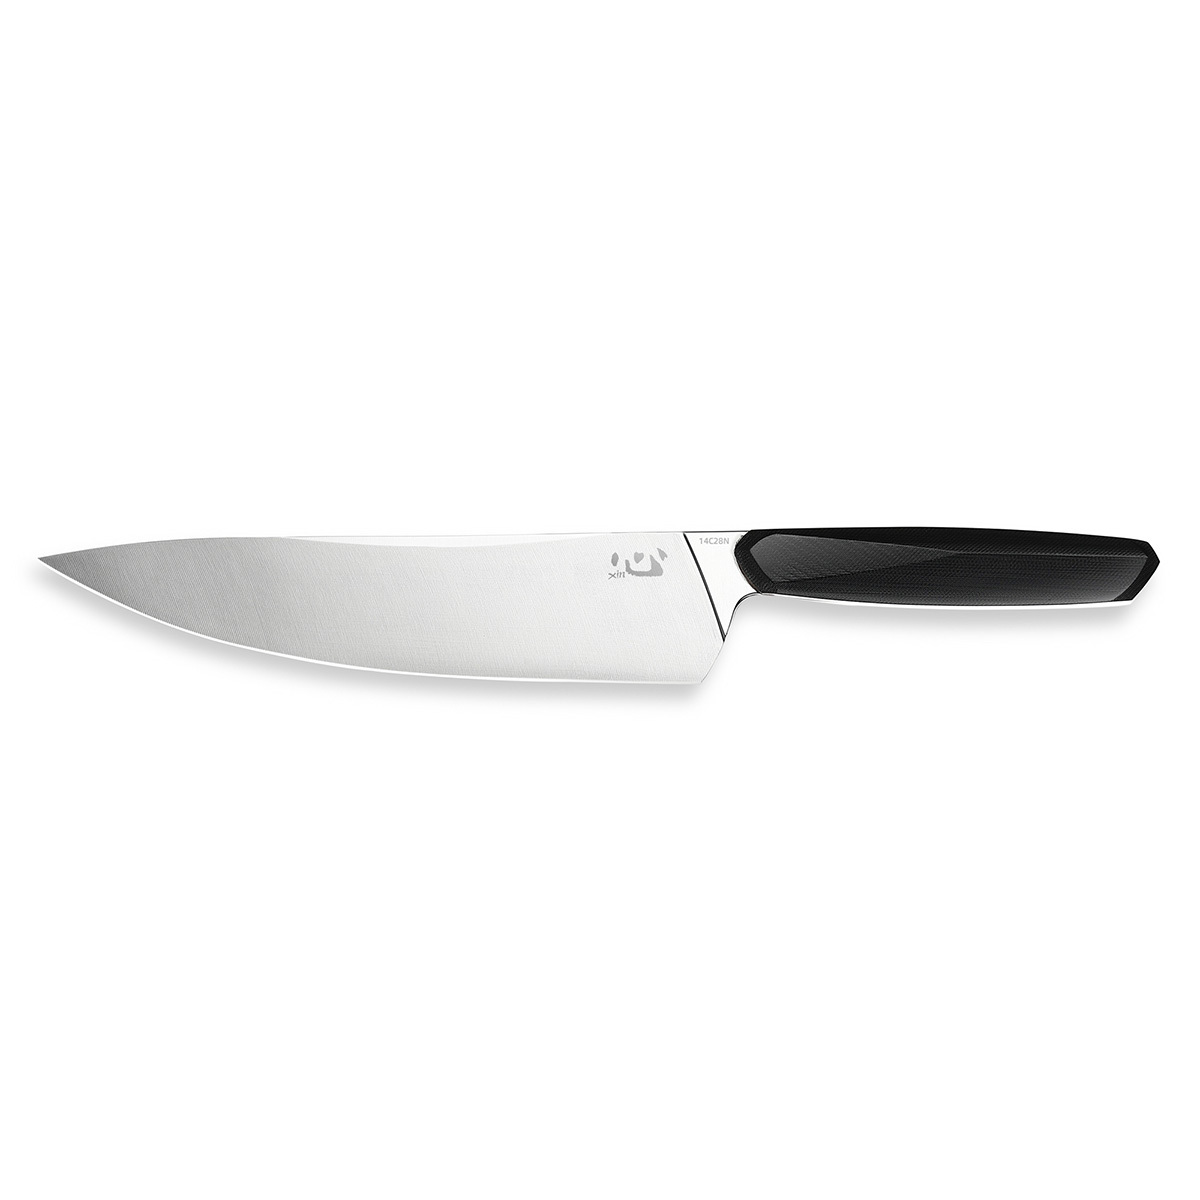   Xin Cutlery Chef XC124 215,  Sandvik 14C28N,  - G10